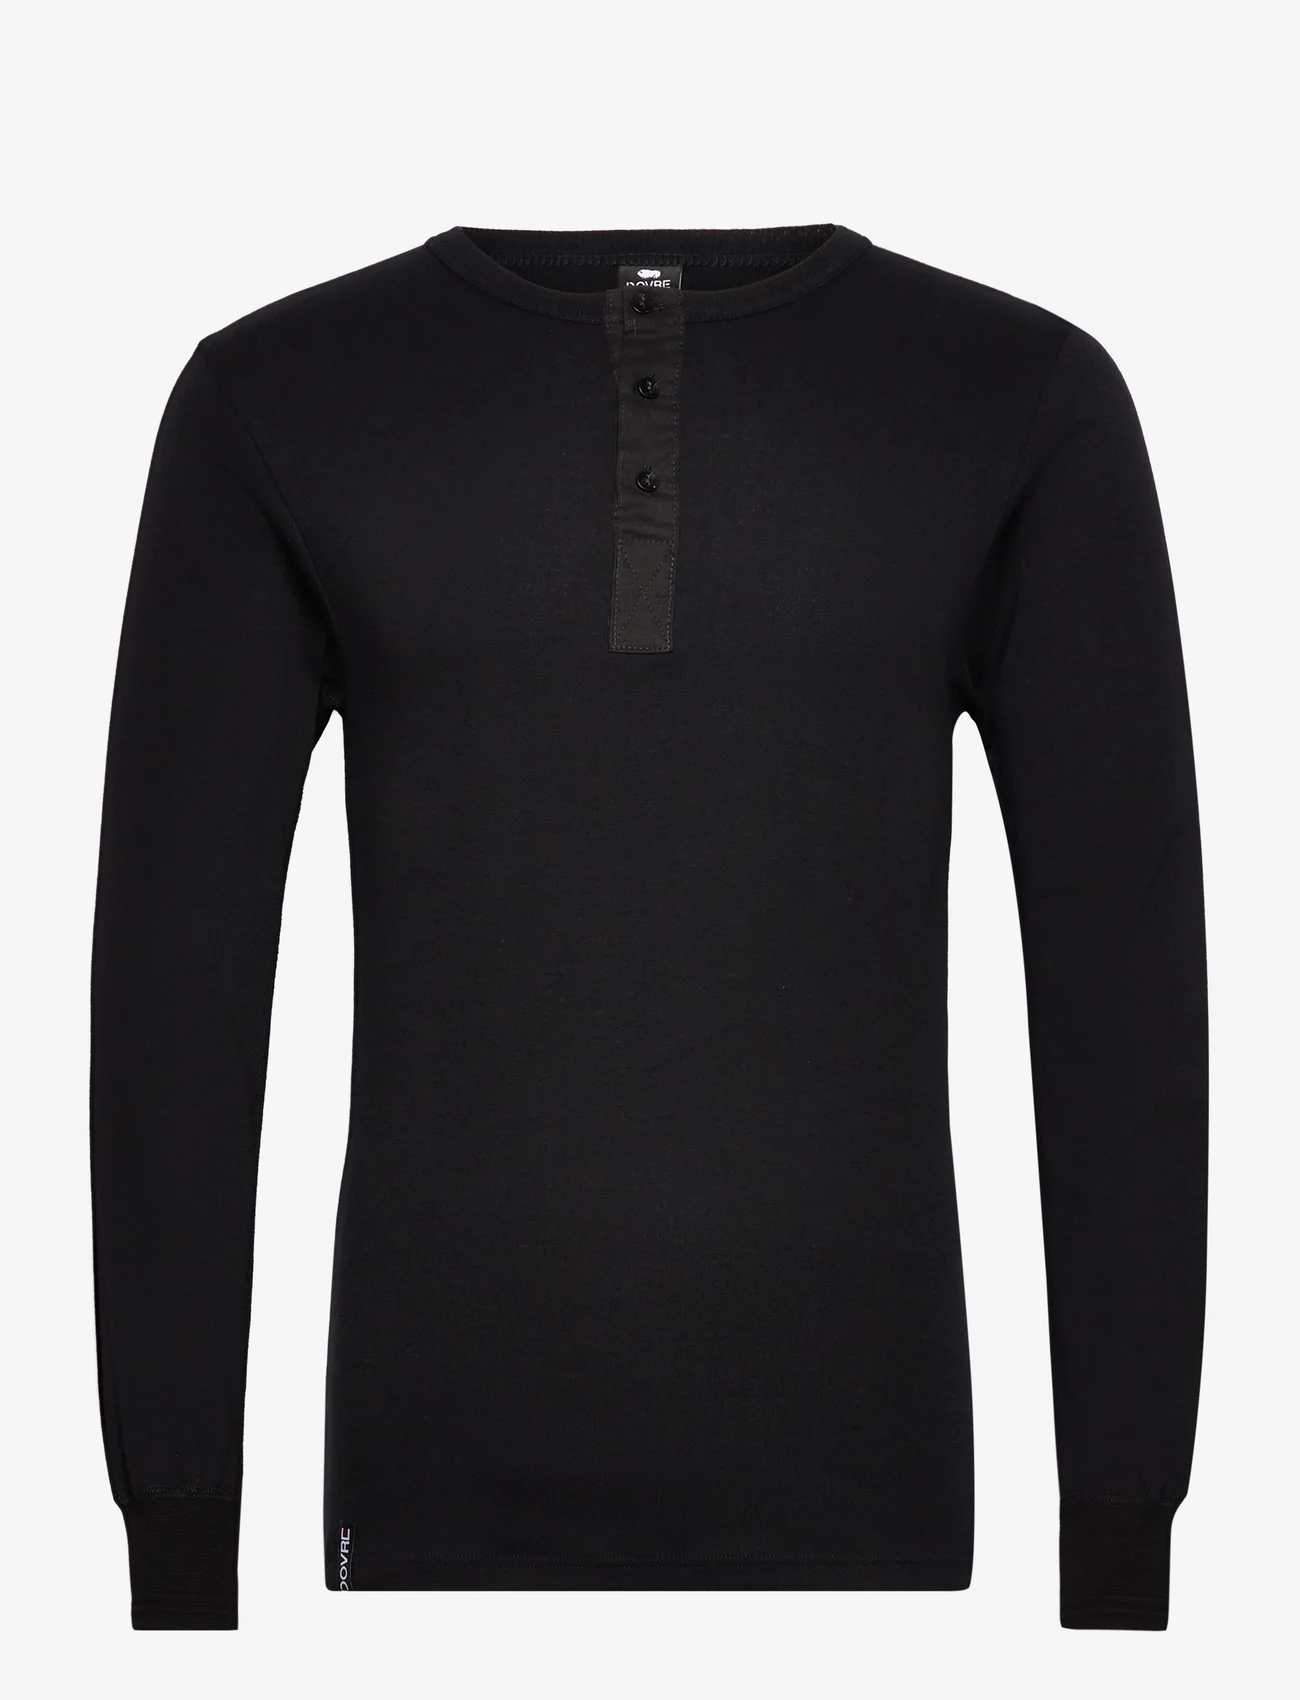 Dovre - Dovre T-Shirt 1/1 ærme/stolpe - die niedrigsten preise - black - 0